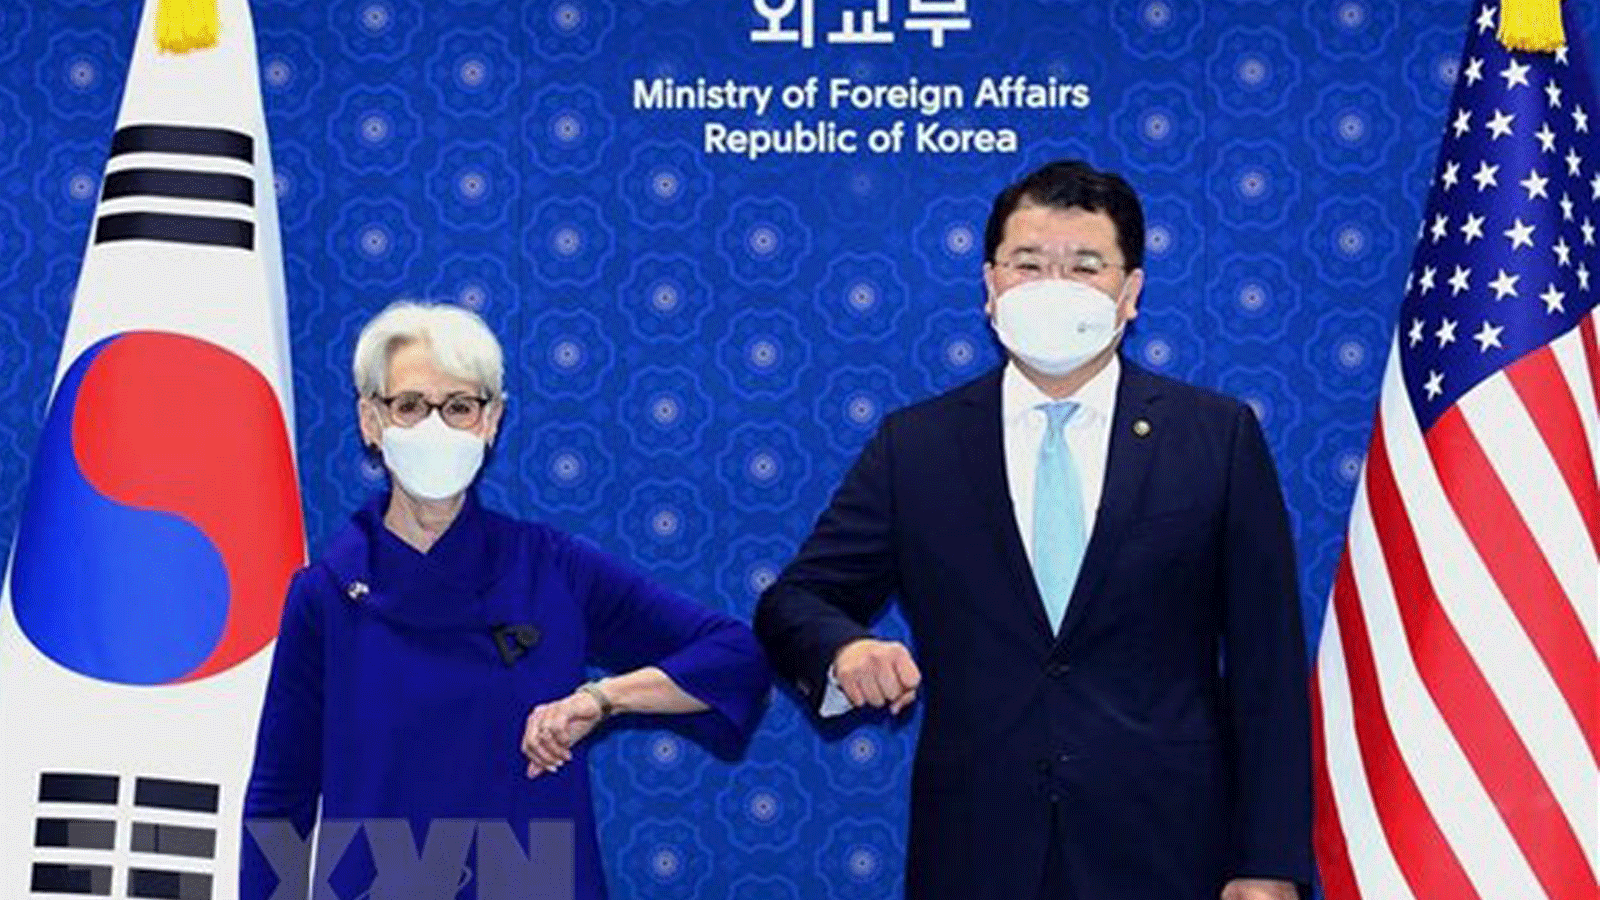 نائبة وزيرة الخارجية الأمريكية ويندي شيرمان (إلى اليسار) والنائب الأول لوزير خارجية كوريا الجنوبية تشوي جونغ كون في اجتماع في سيول يوم 23 تموز/ يوليو.